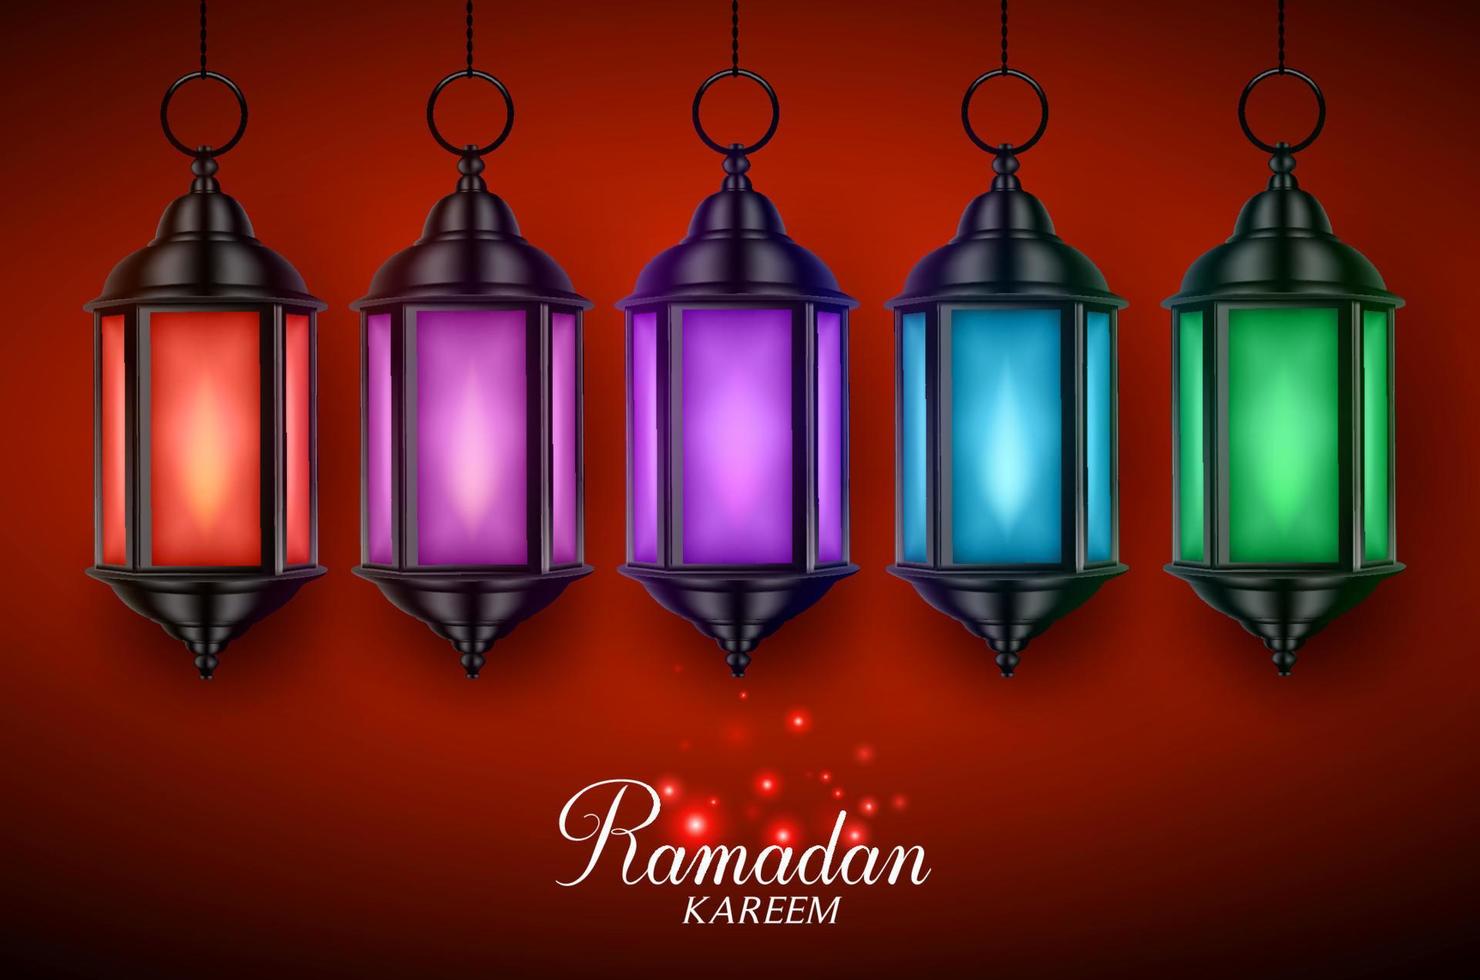 lâmpada de lanterna ou vetor fanous definido com luzes coloridas penduradas em fundo vermelho escuro com saudações de ramadan kareem